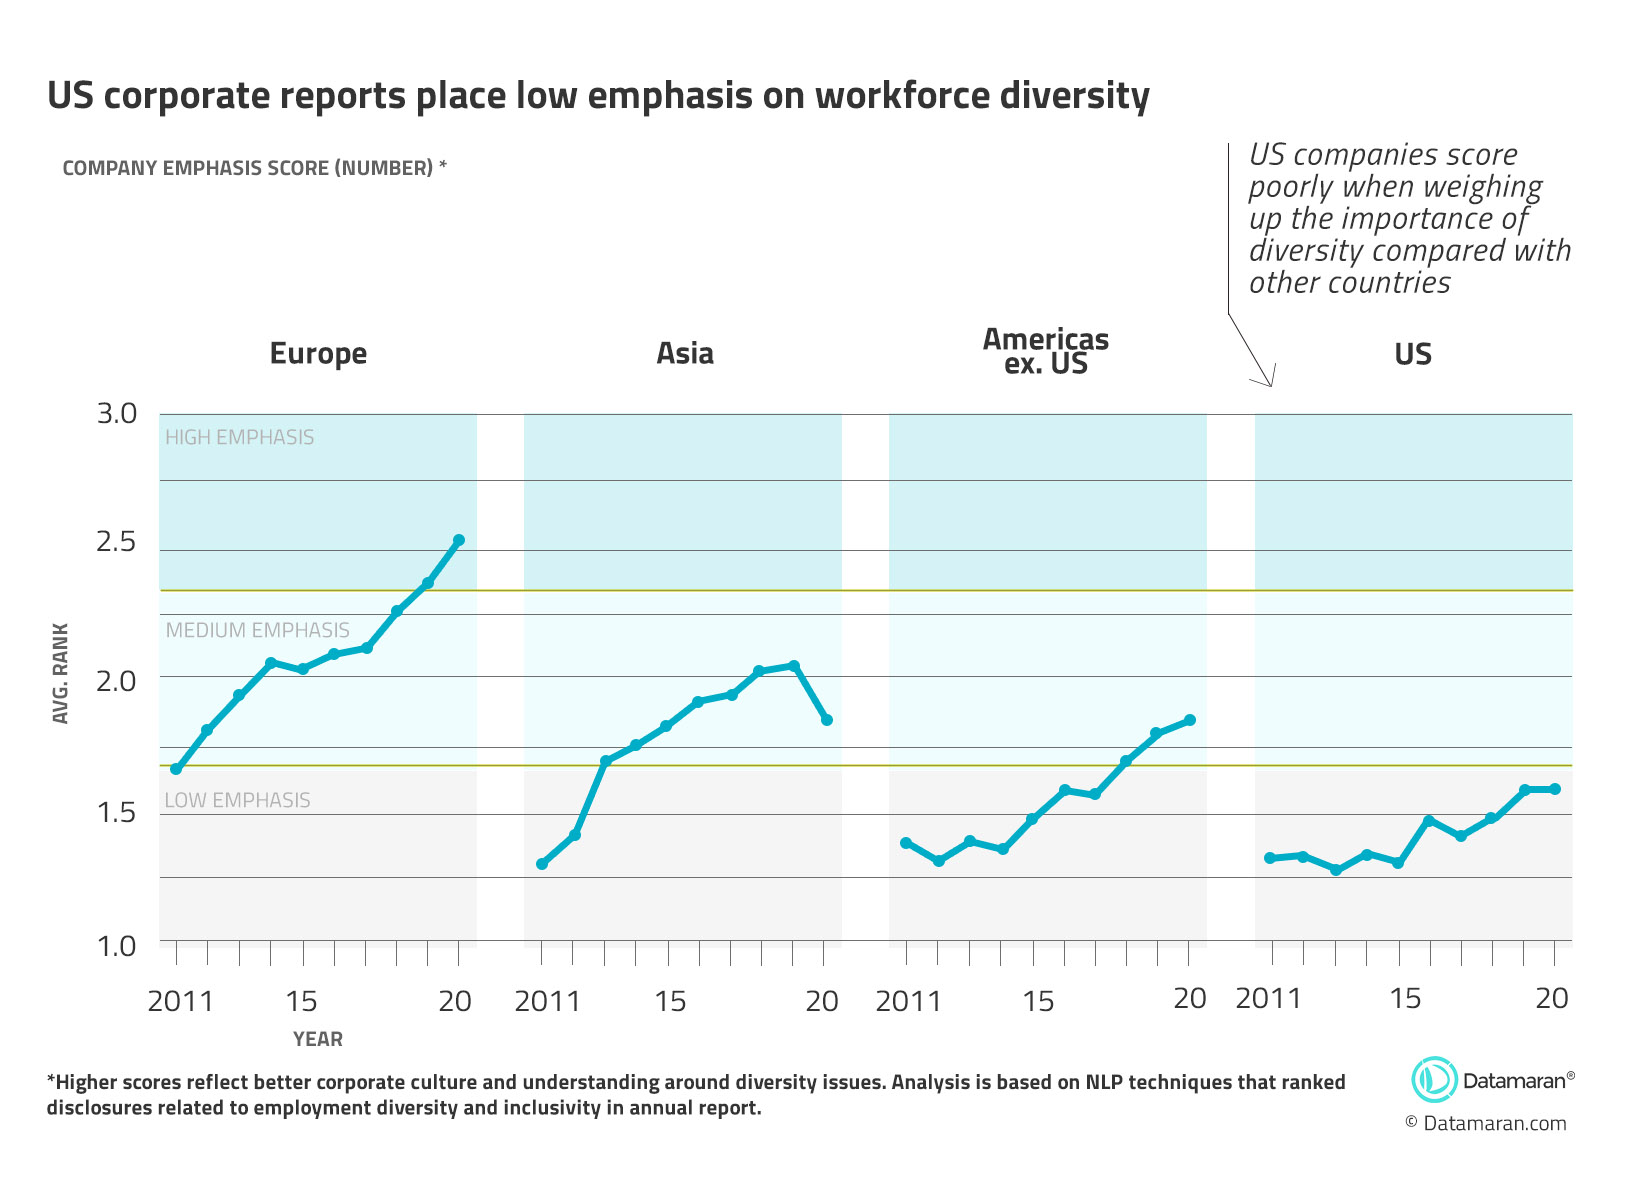 图表显示了世界不同地区的公司对多样性的重视程度。与美国其他地区、亚洲和欧洲相比，美国排名较低。